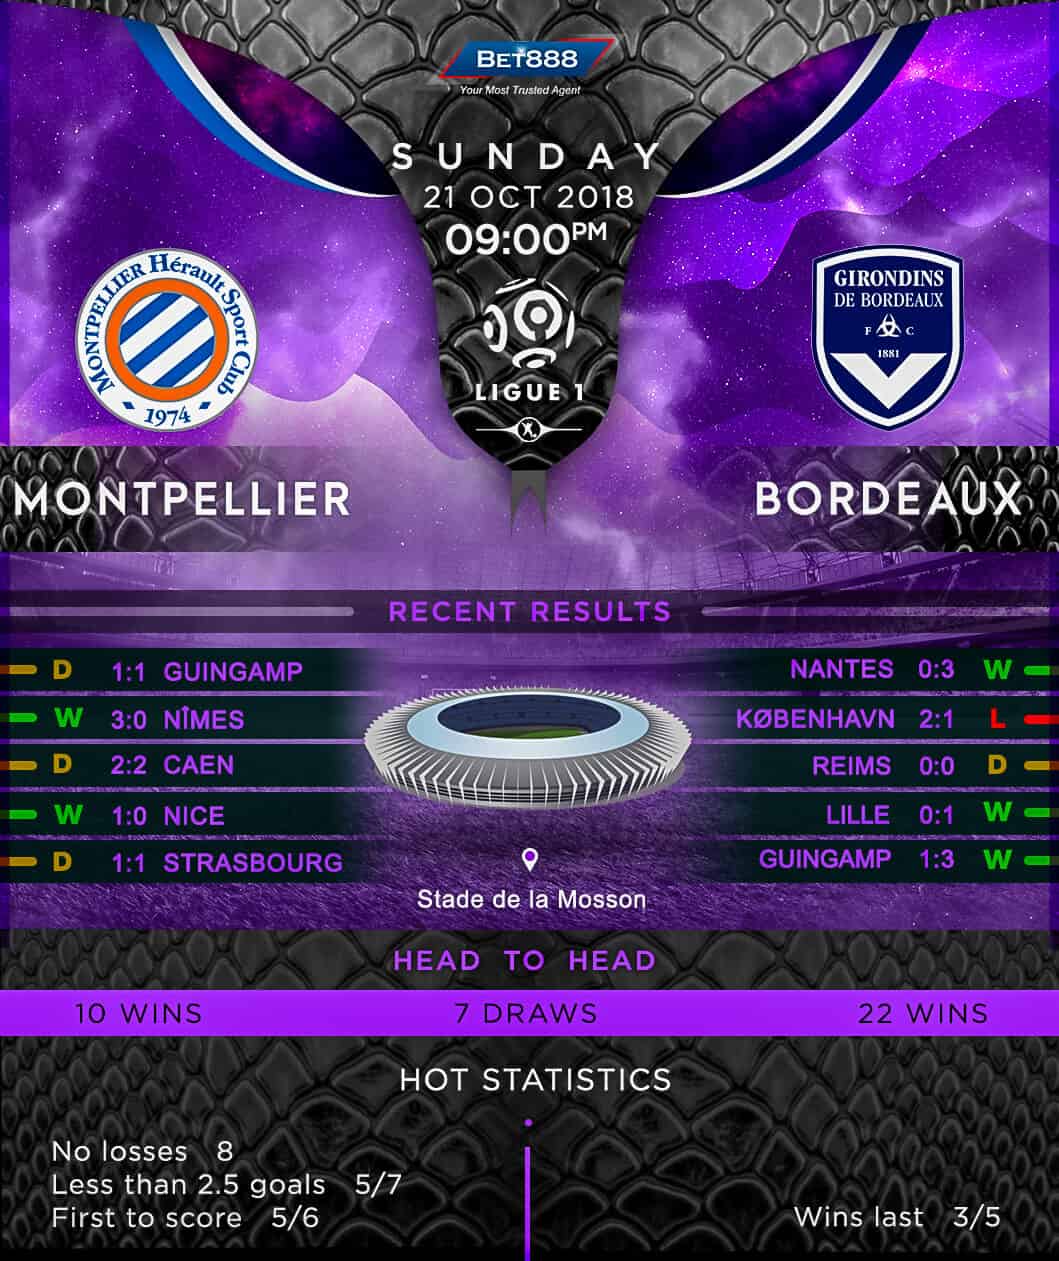 Montpellier vs Bordeaux 21/10/18